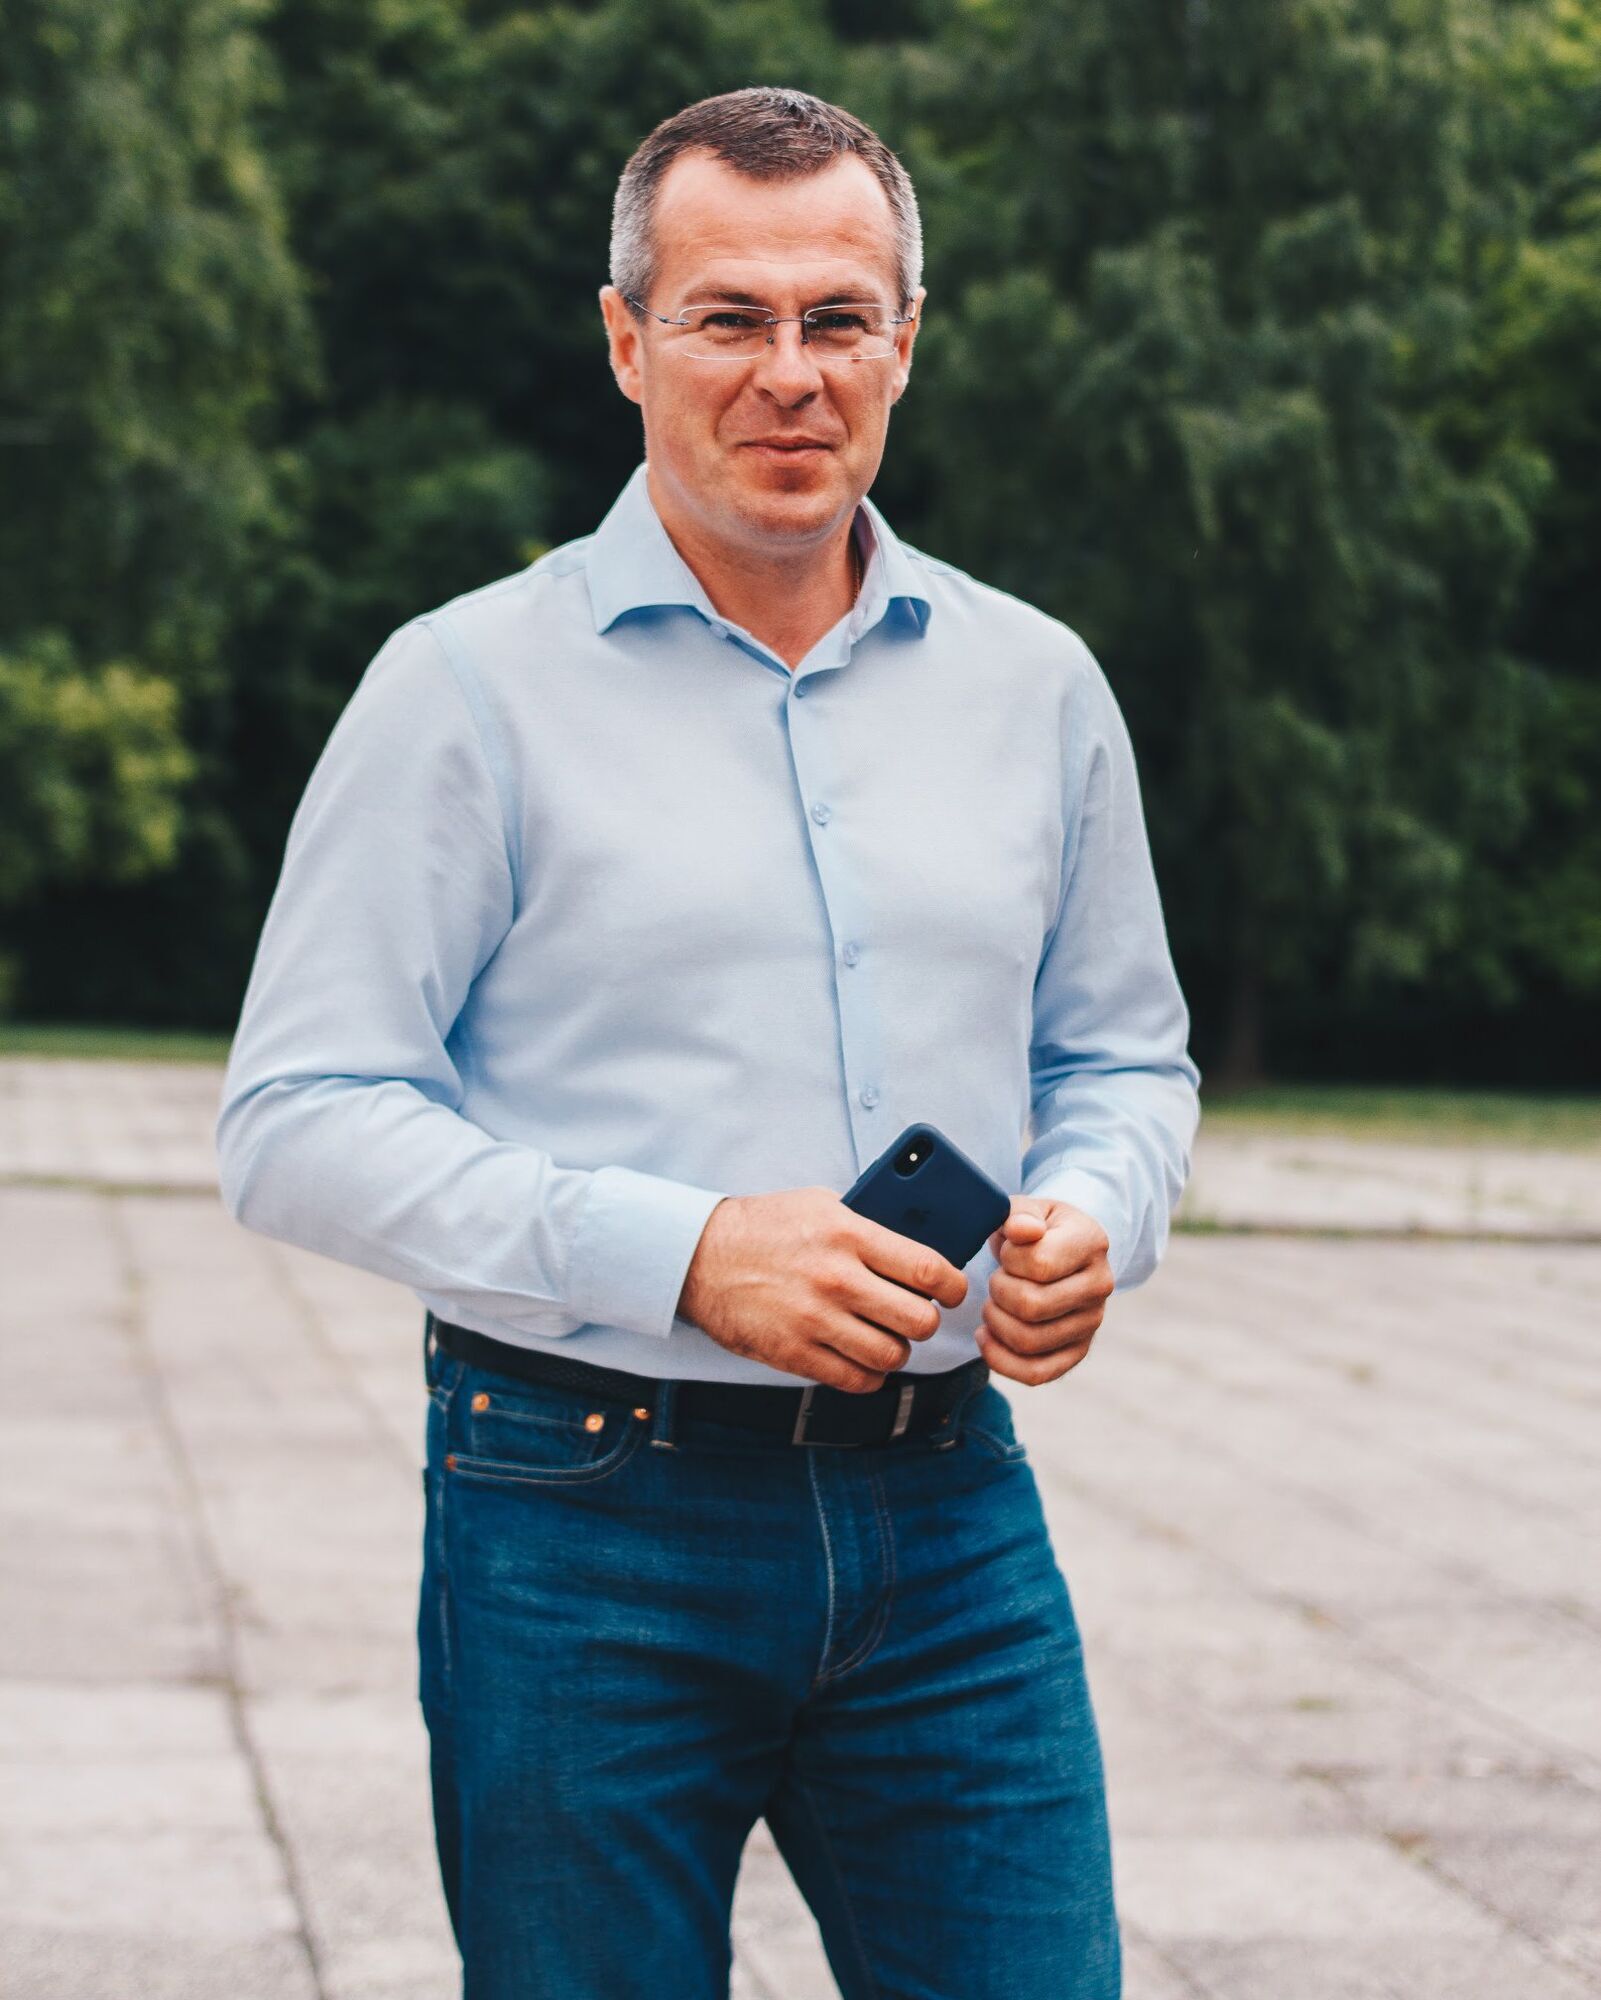 Тарас Клефа – кандидат в мэры Львова от президентской партии "Слуга народа"